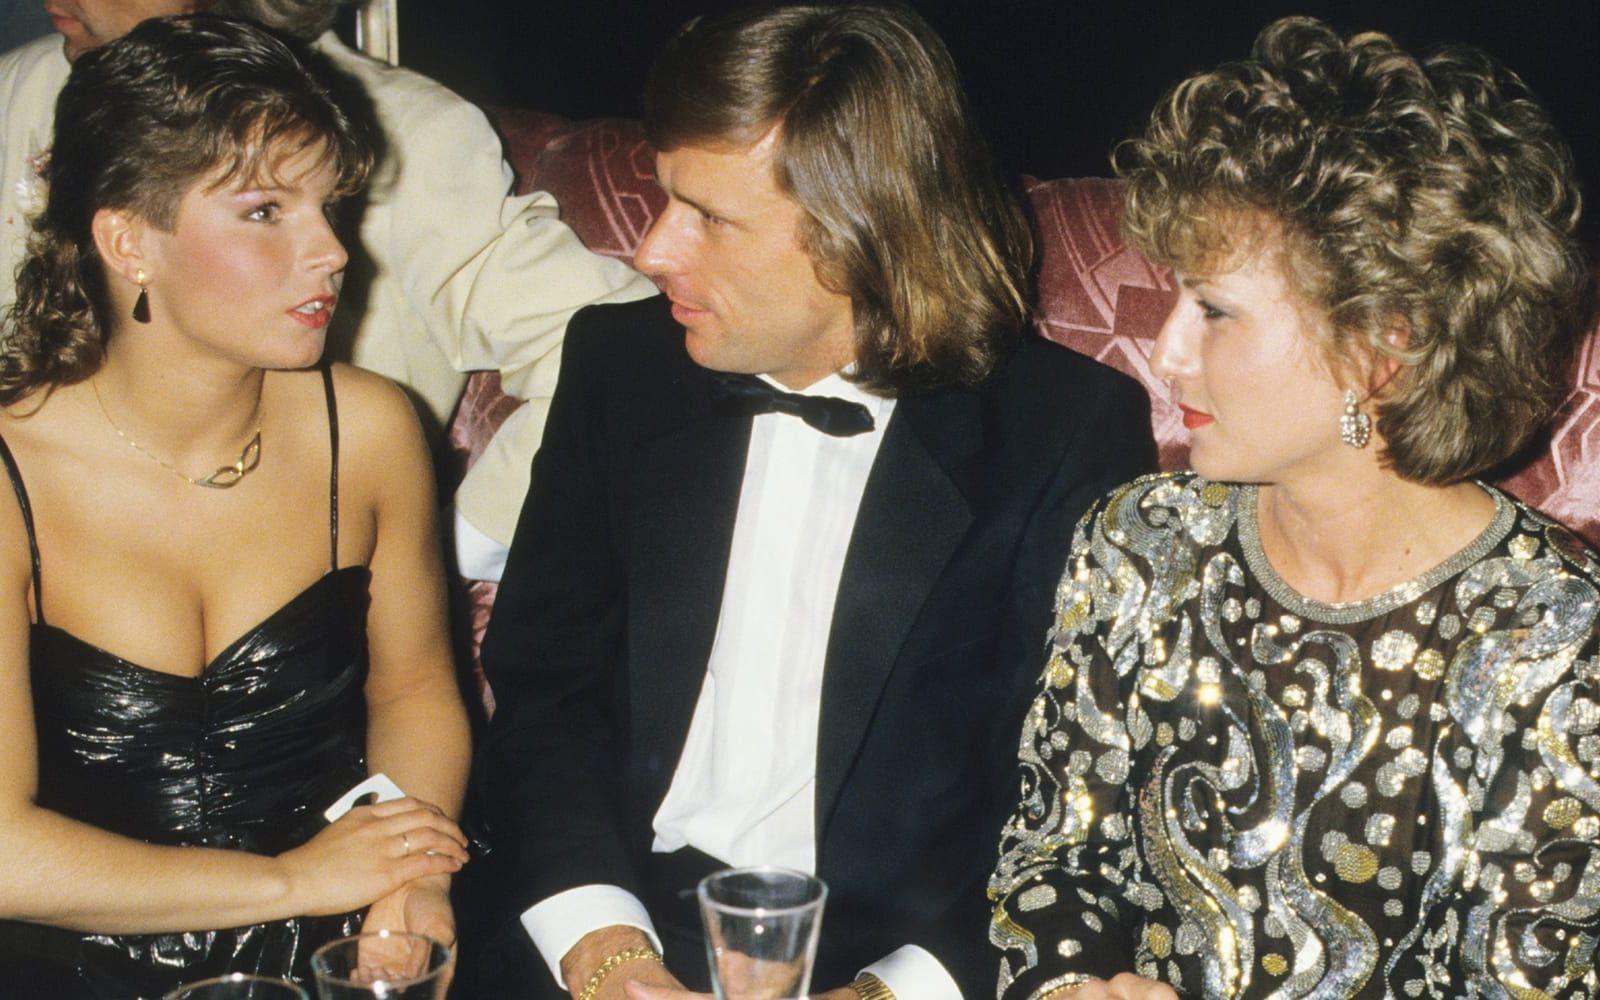 Konversation om kändisskap? Megastjärnorna Carola och Björn Borg, med dåvarande frun Mariana, fångade på bild på nattklubb 1984. Foto: Stella Pictures